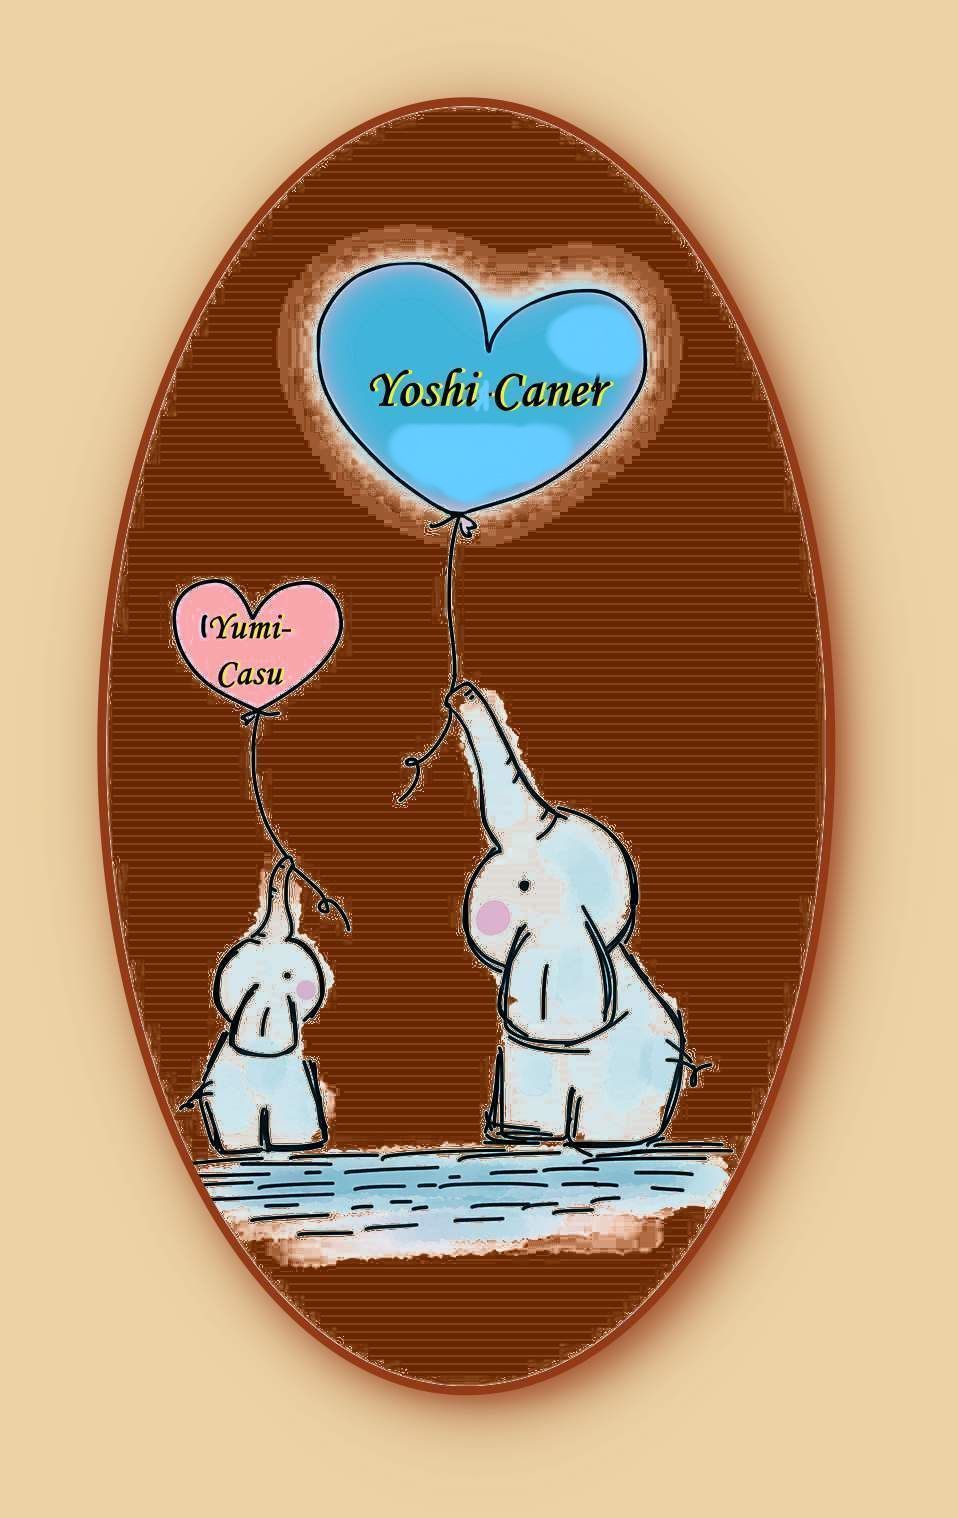 Ein kleiner und ein großer Elefant, jeder hält einen herzförmigen Luftballon mit den Namen der Kinder, Yoshi-Caner, Yumi-Casu,